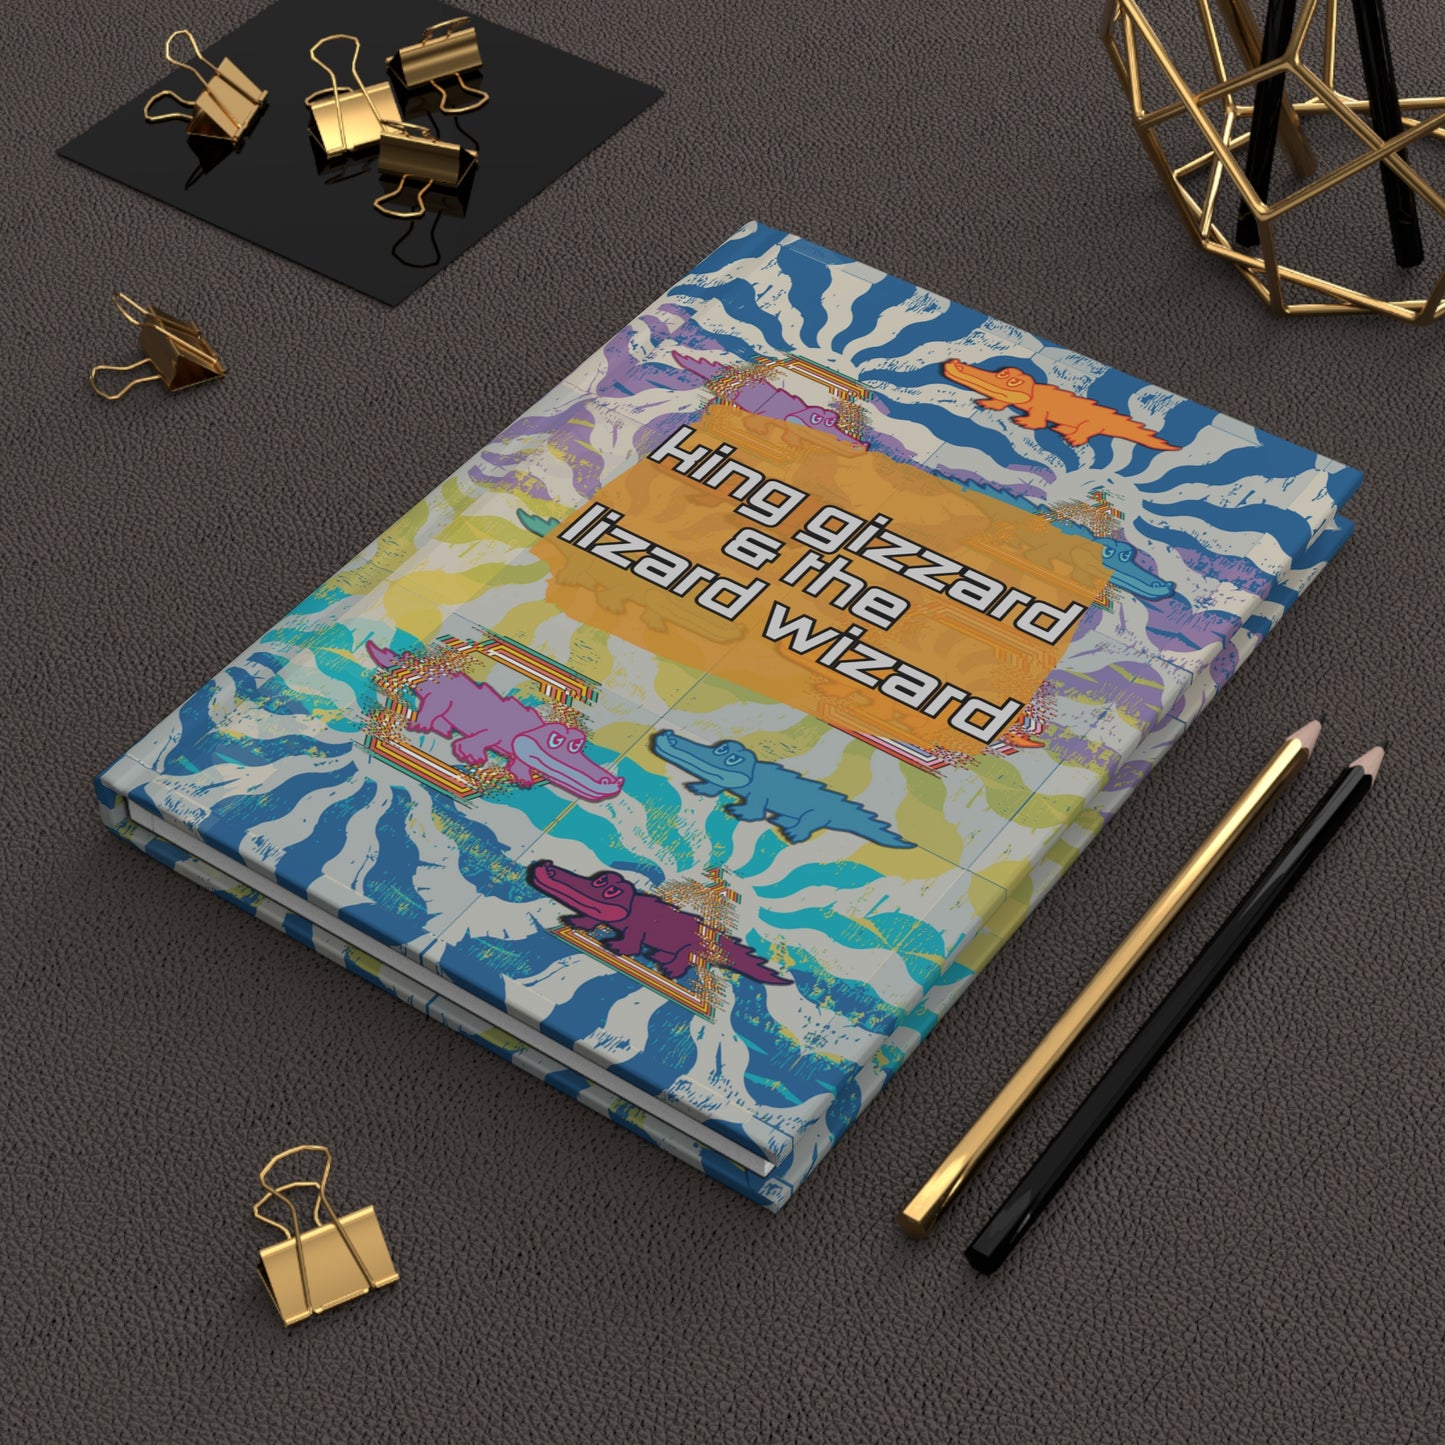 King Gizzard & the Lizard Wizard Notebook